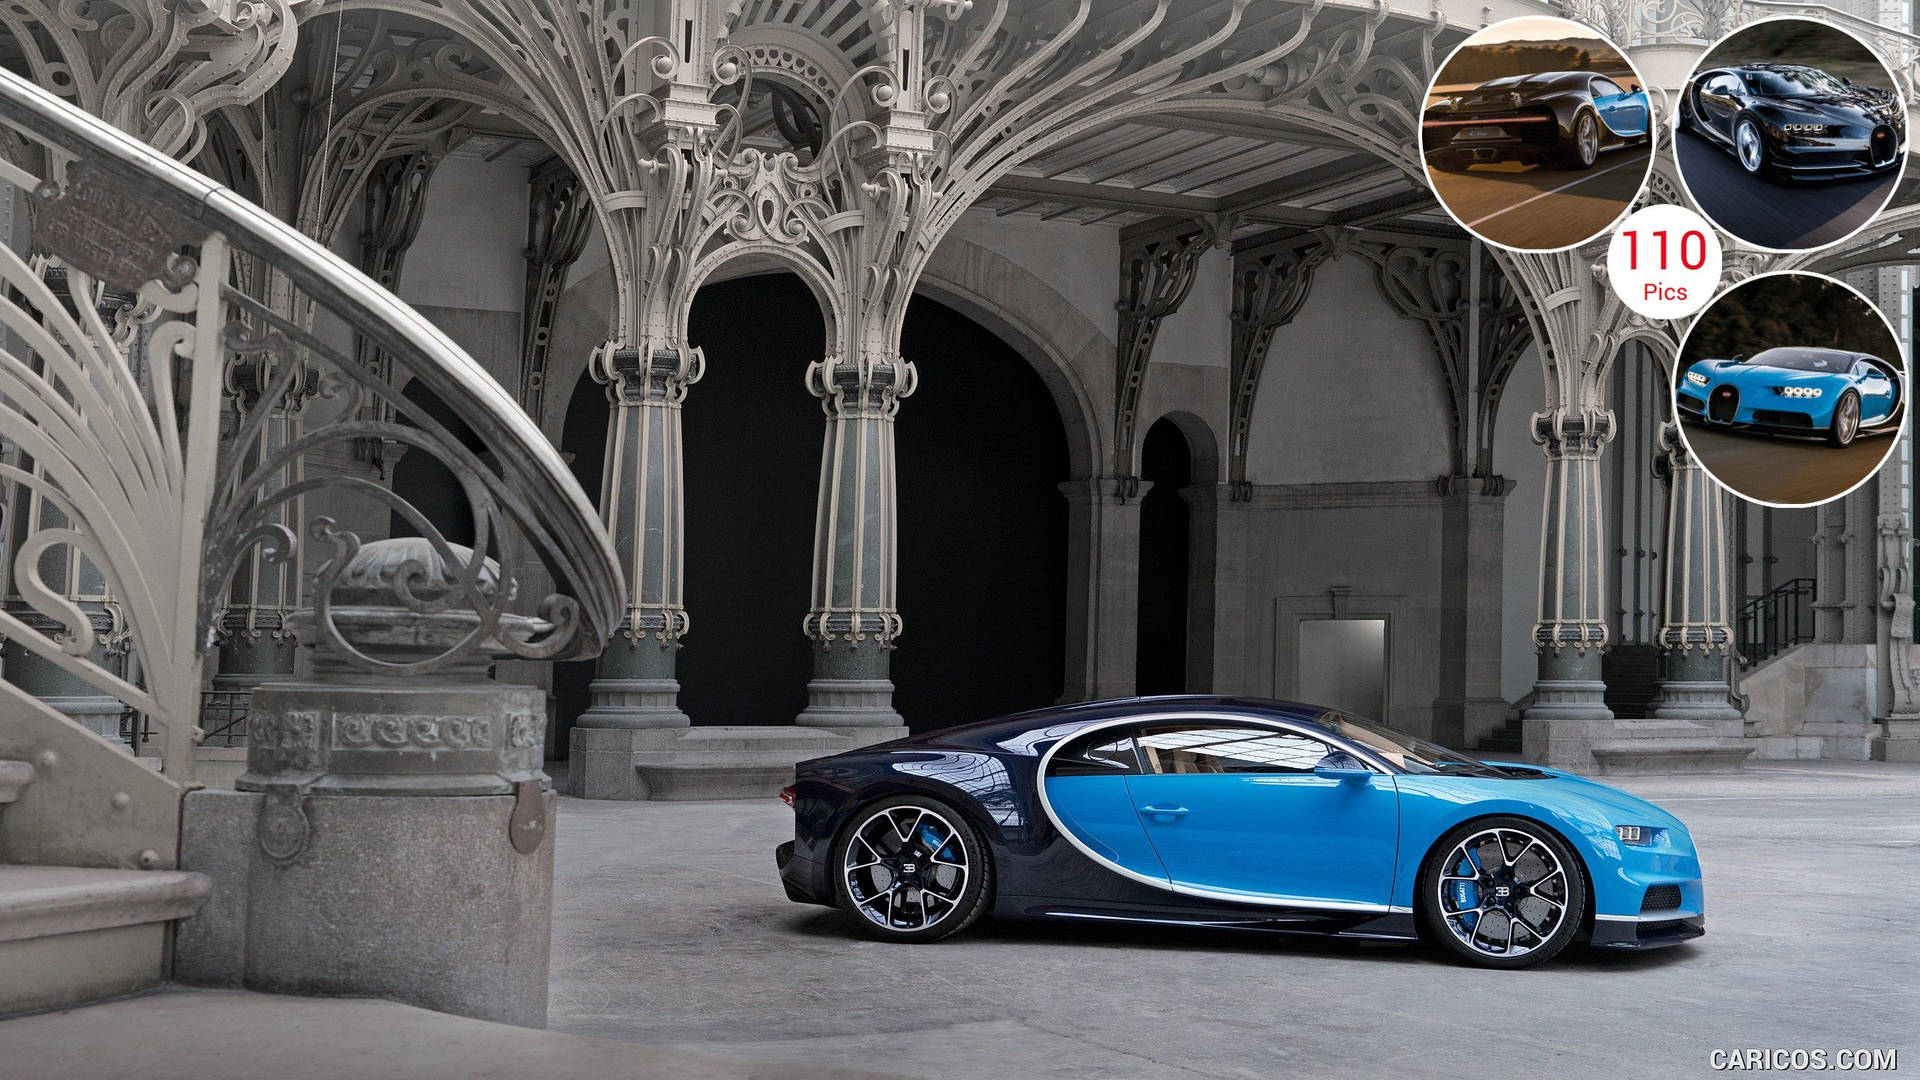 2560X1440 Bugatti Wallpaper and Background